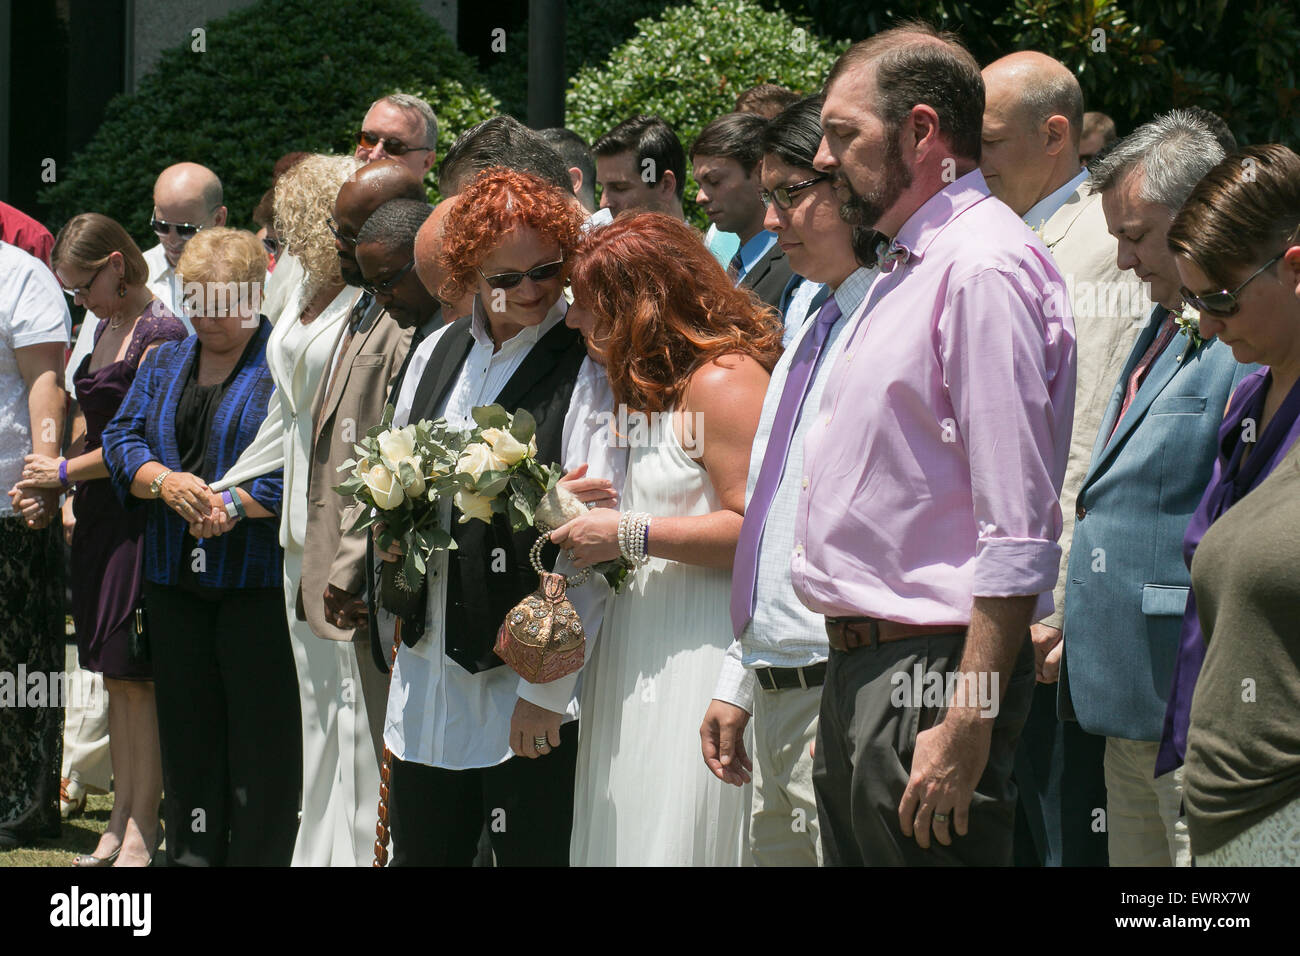 101 mariages Gay mariages de masse à l'hôtel InterContinental à Atlanta après la décision Obergefell c. Hodges en 2016. Banque D'Images